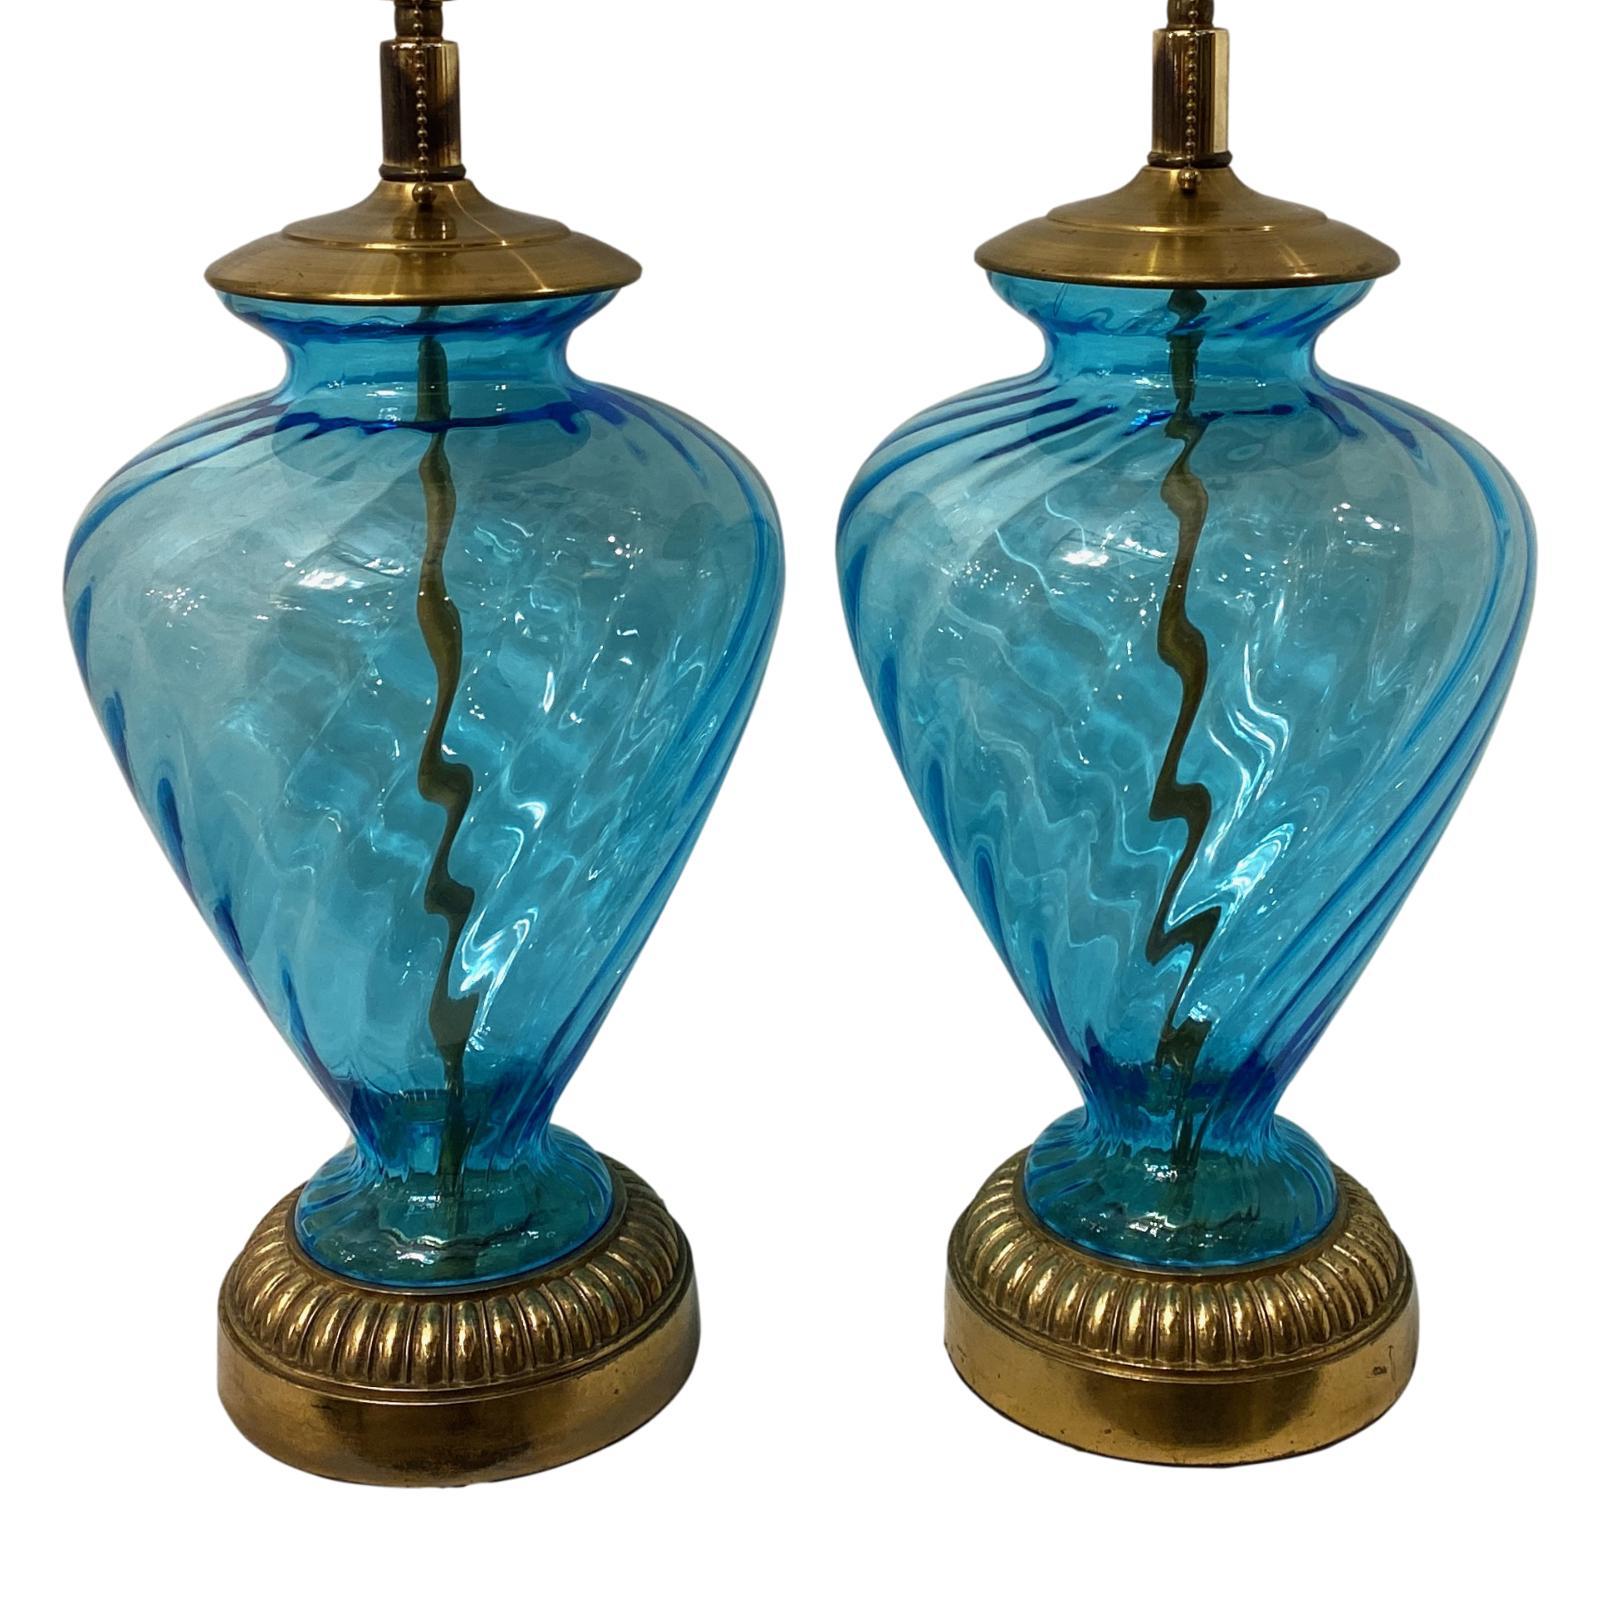 Zwei italienische Tischlampen aus mundgeblasenem Glas mit Bronzefuß, CIRCA 1940er Jahre.

Abmessungen:
Höhe des Körpers 19